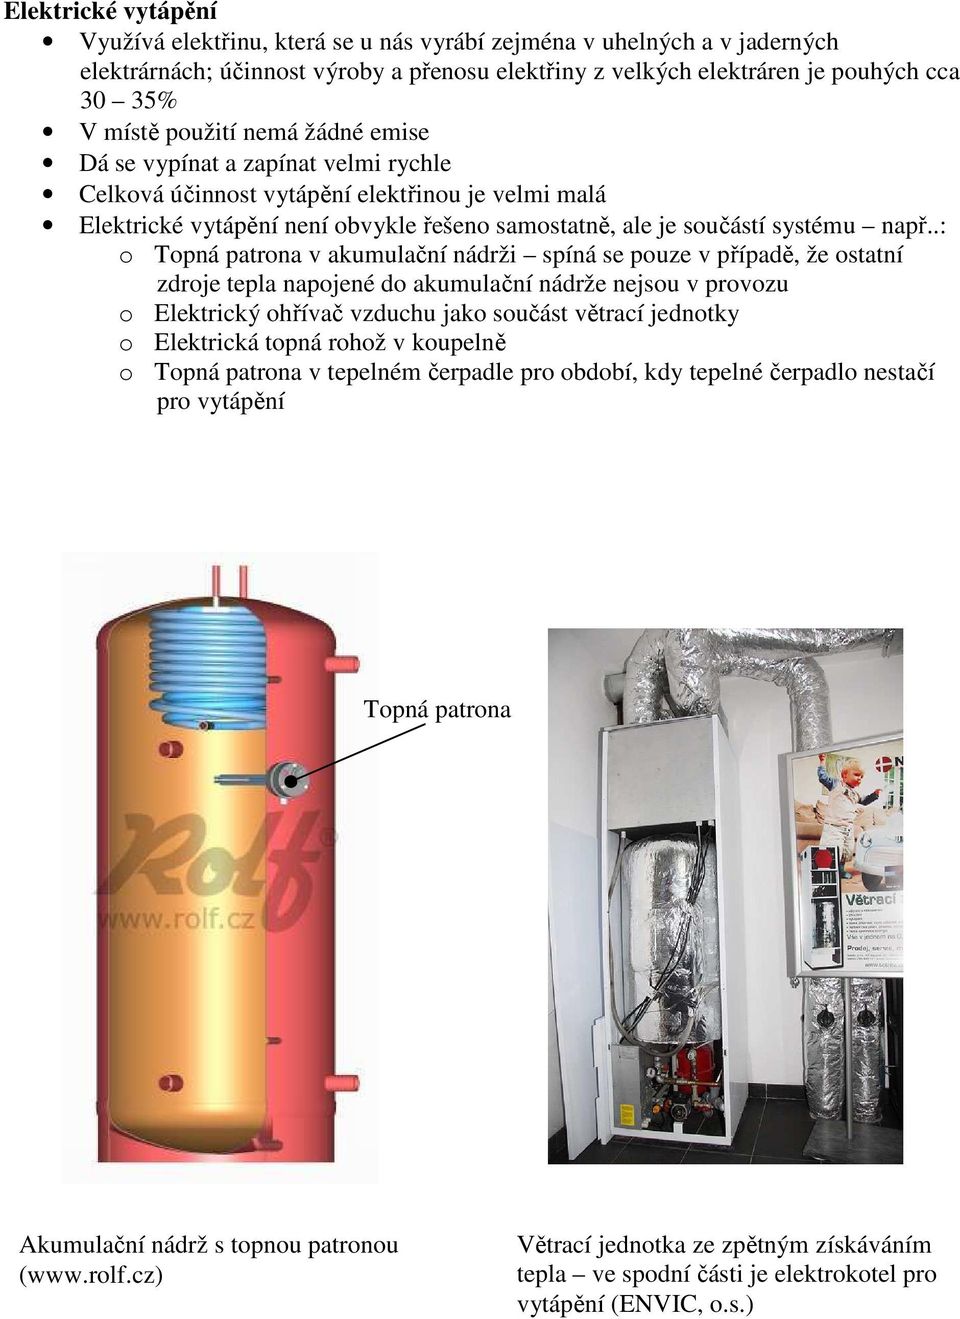 .: o Topná patrona v akumulační nádrži spíná se pouze v případě, že ostatní zdroje tepla napojené do akumulační nádrže nejsou v provozu o Elektrický ohřívač vzduchu jako součást větrací jednotky o